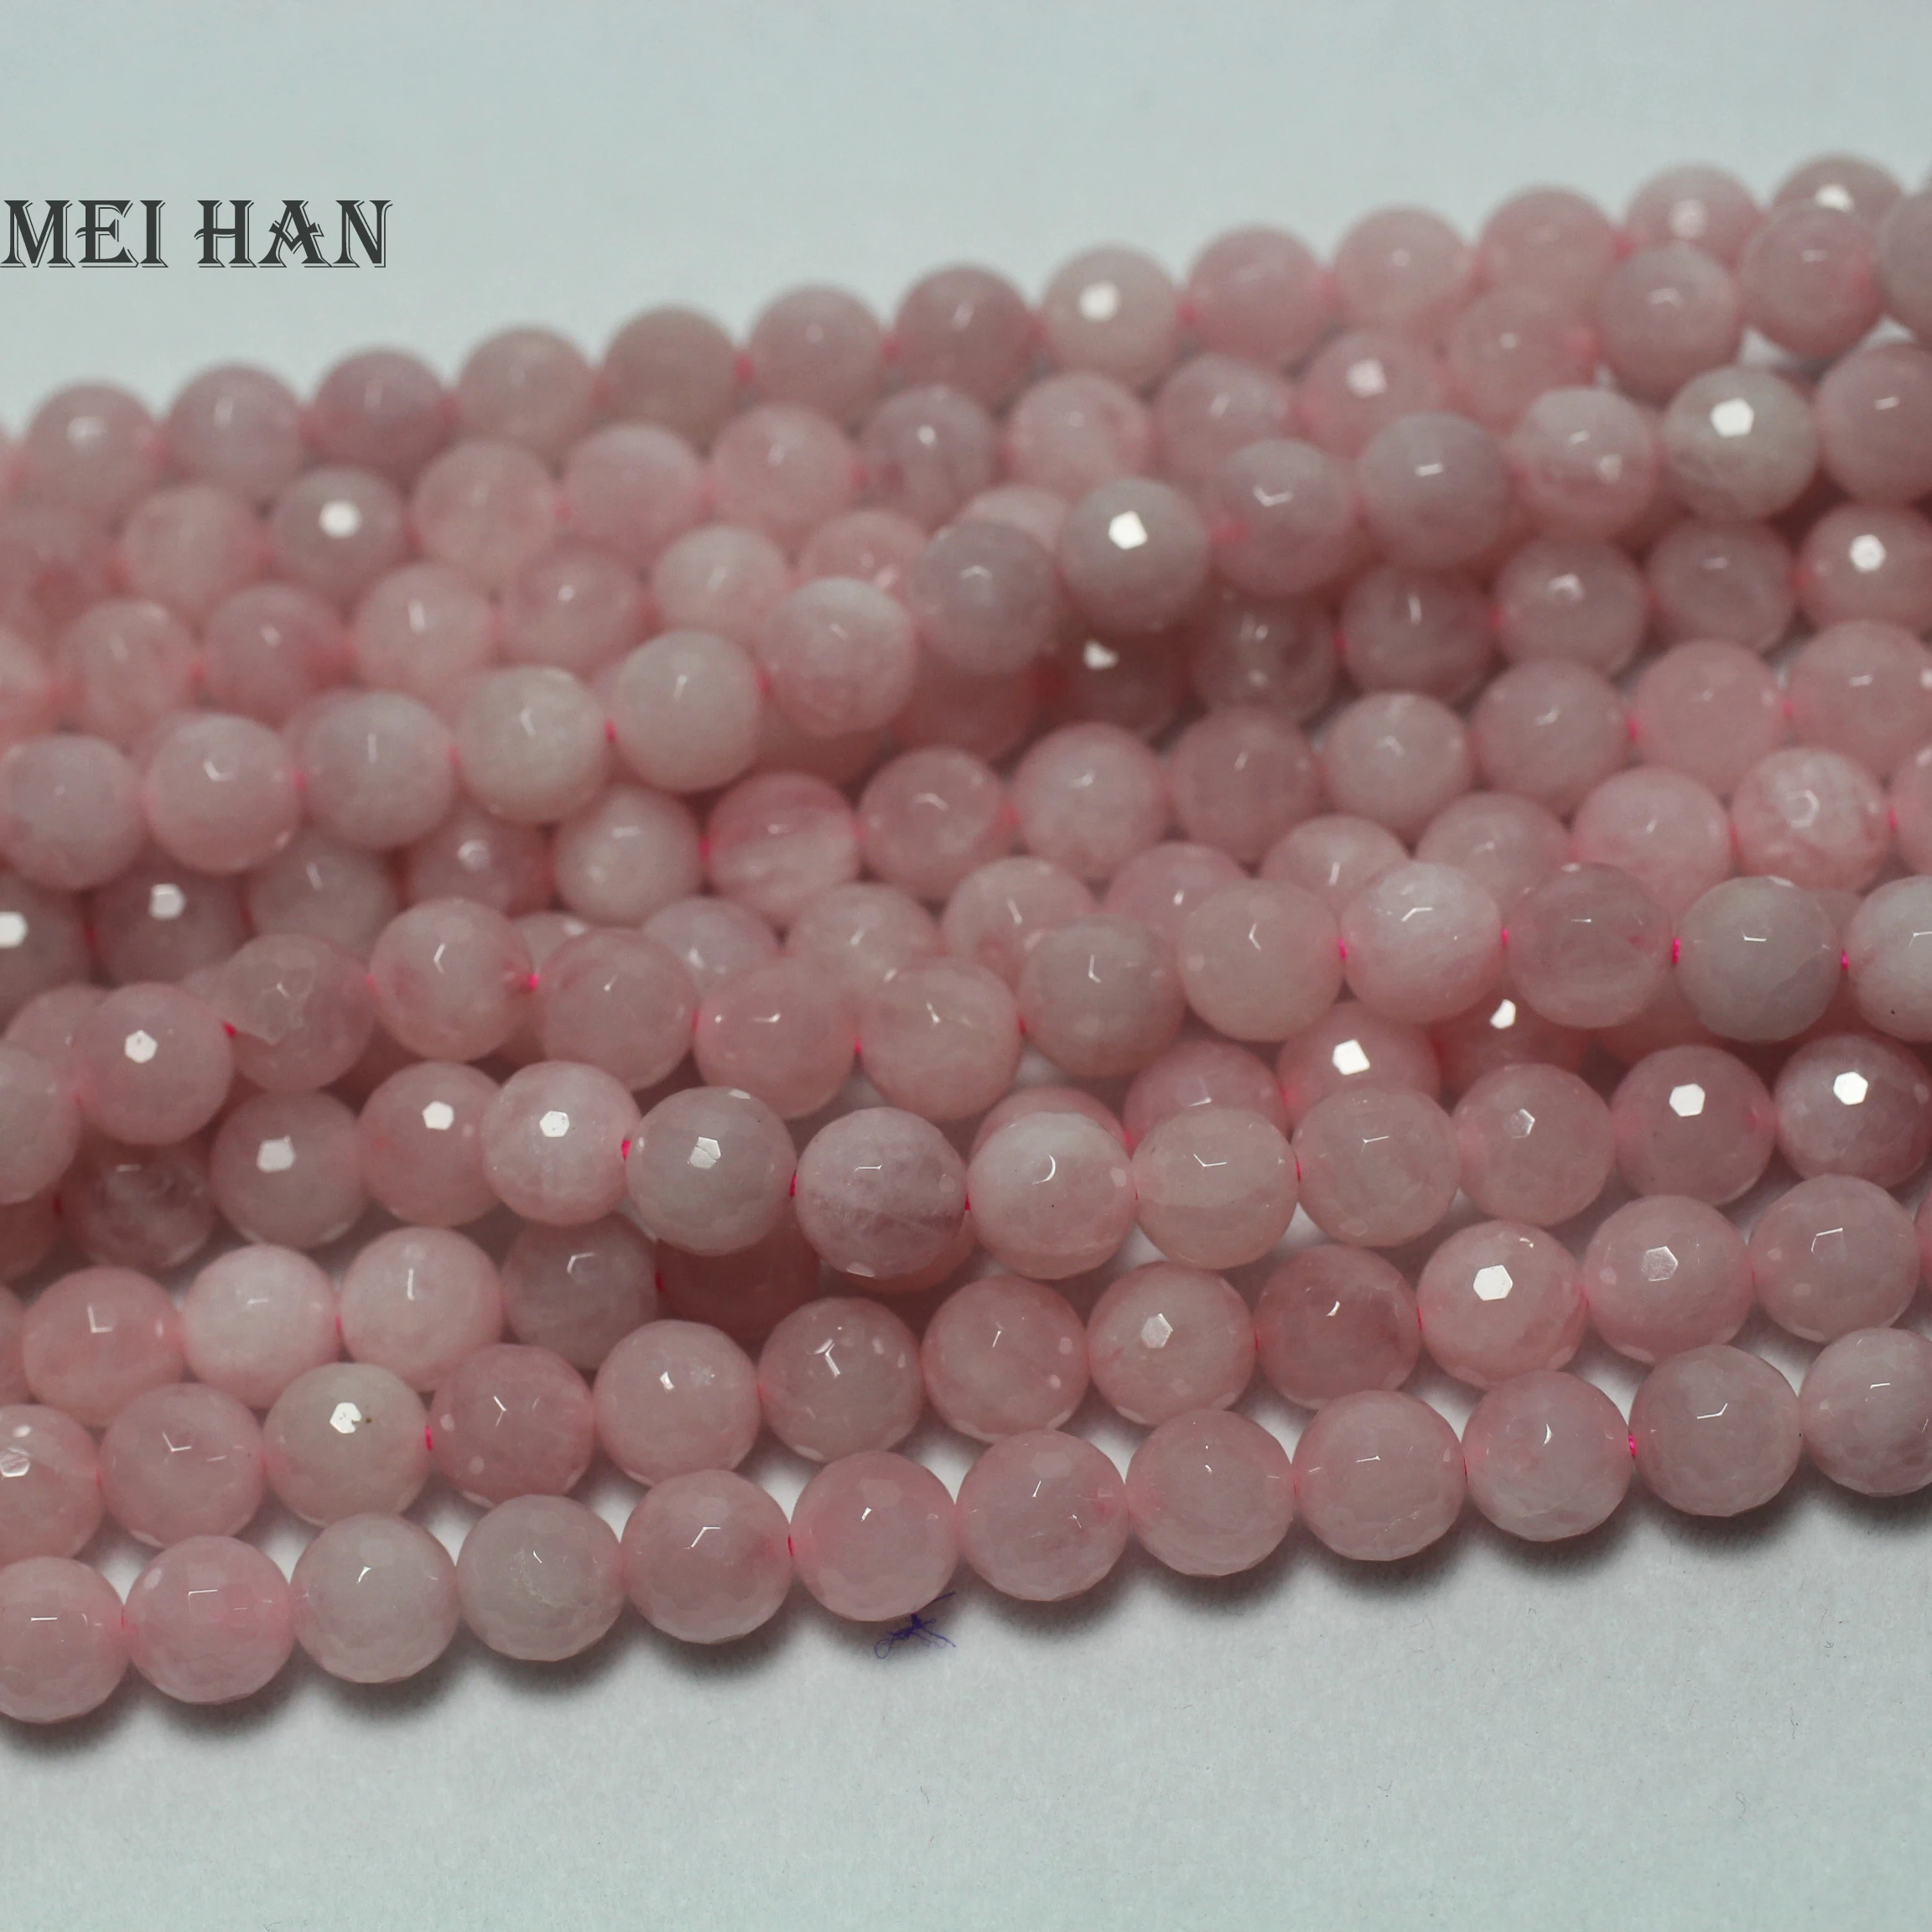 Meihan(3 strandsset) натуральный Блестящий 8 мм розовый кварцевый кристалл розовый кристалл Гладкие Круглые свободные бусины для Набор для изготовления ювелирных украшений вручную